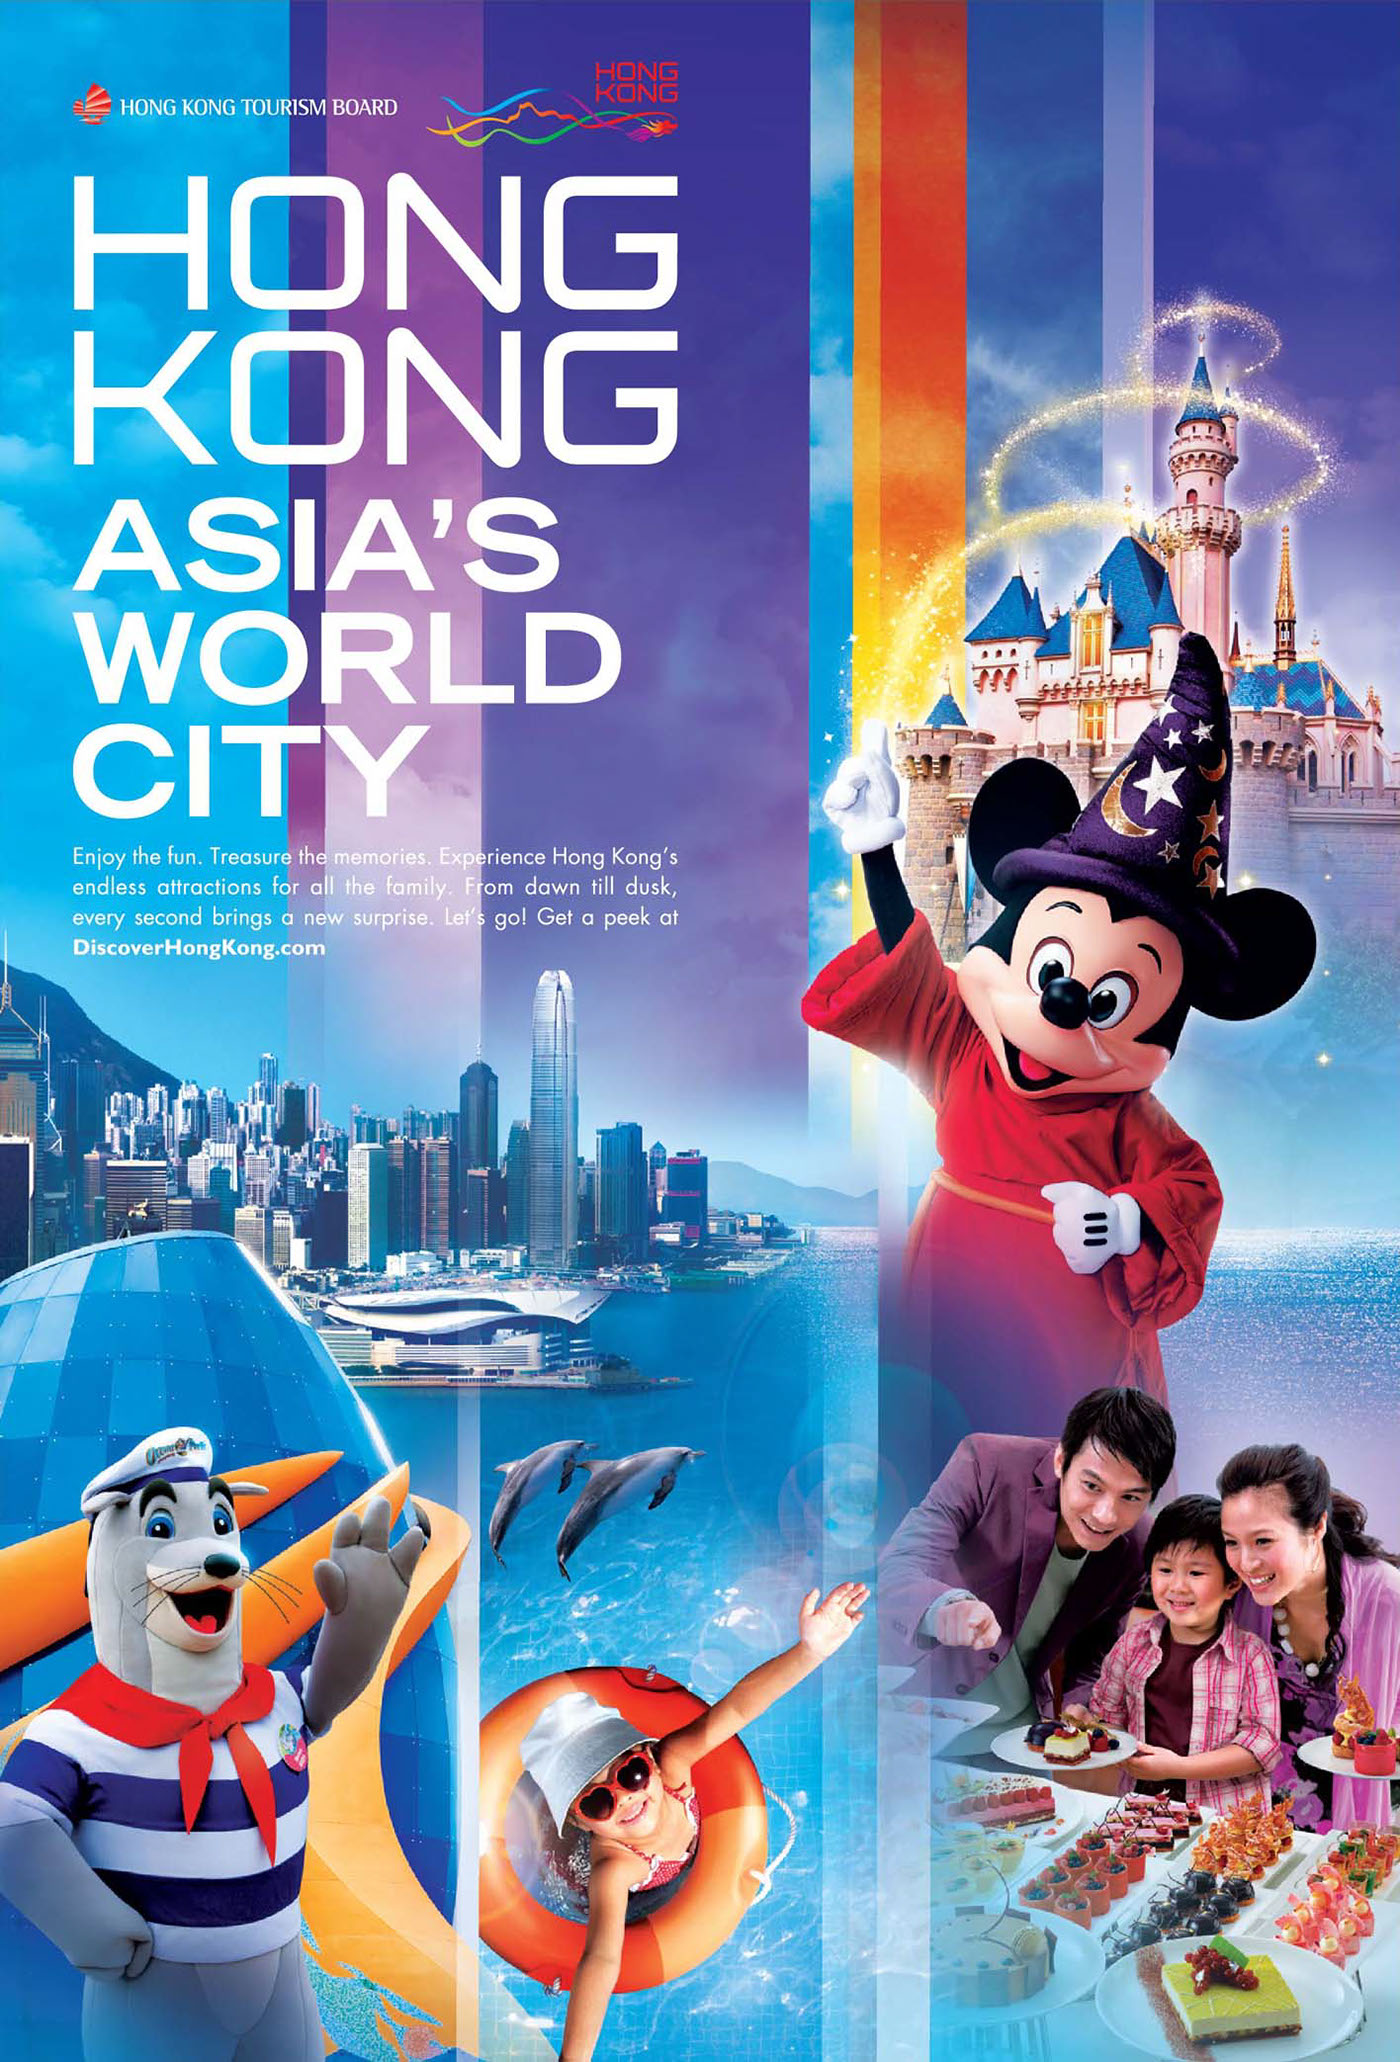 hong kong tourism board uk